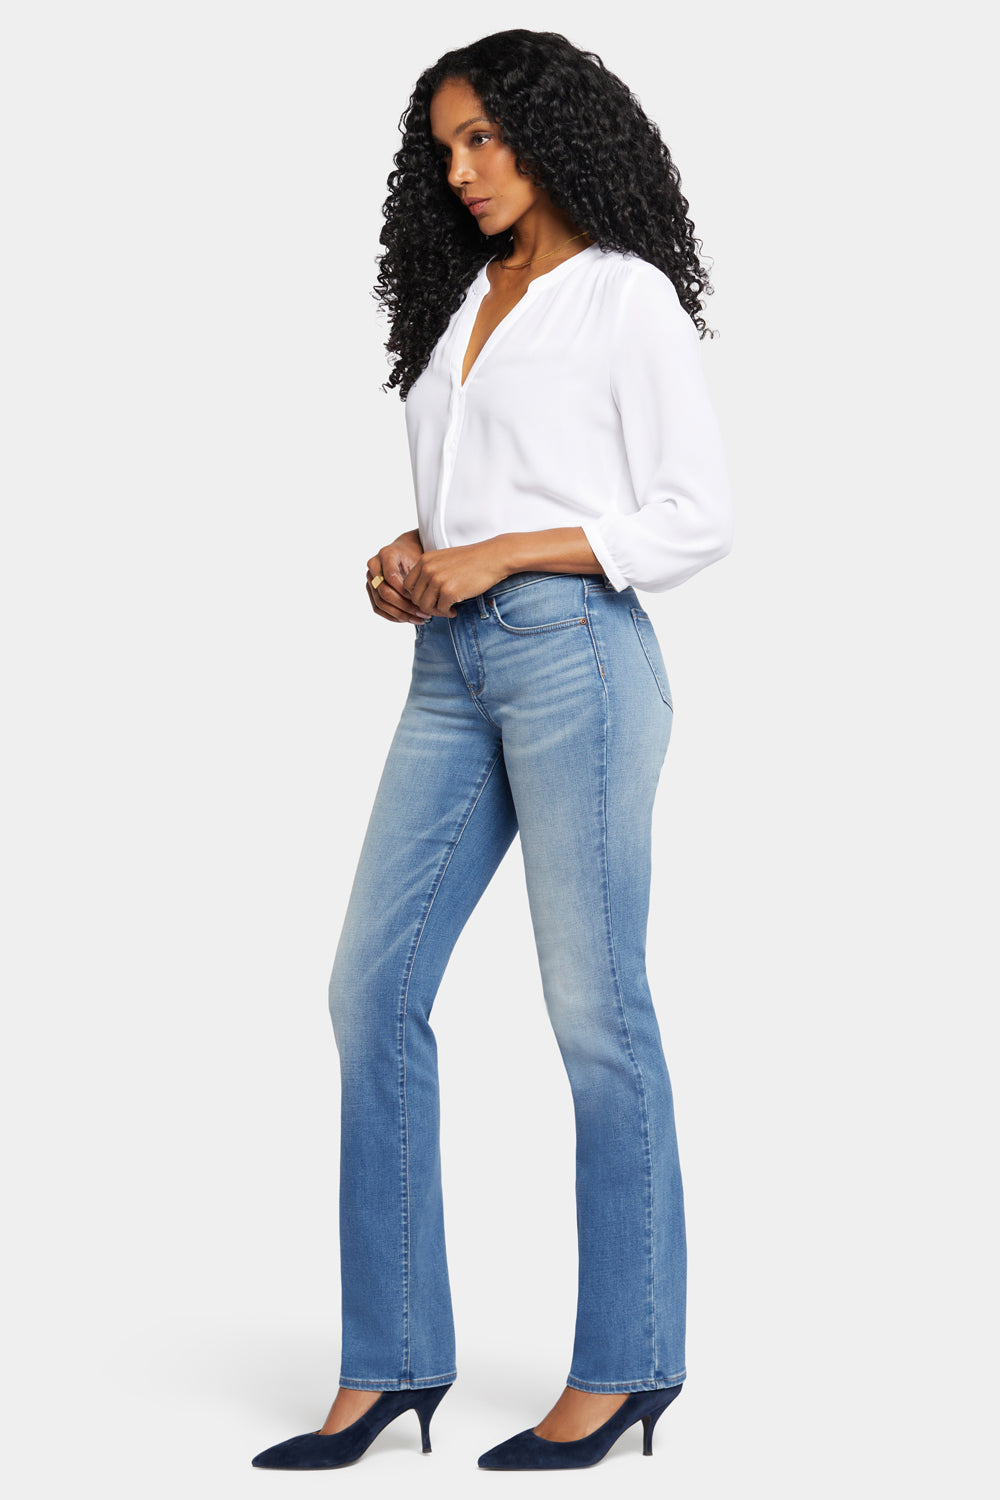 NYDJ Marilyn Straight Jeans  - Maele